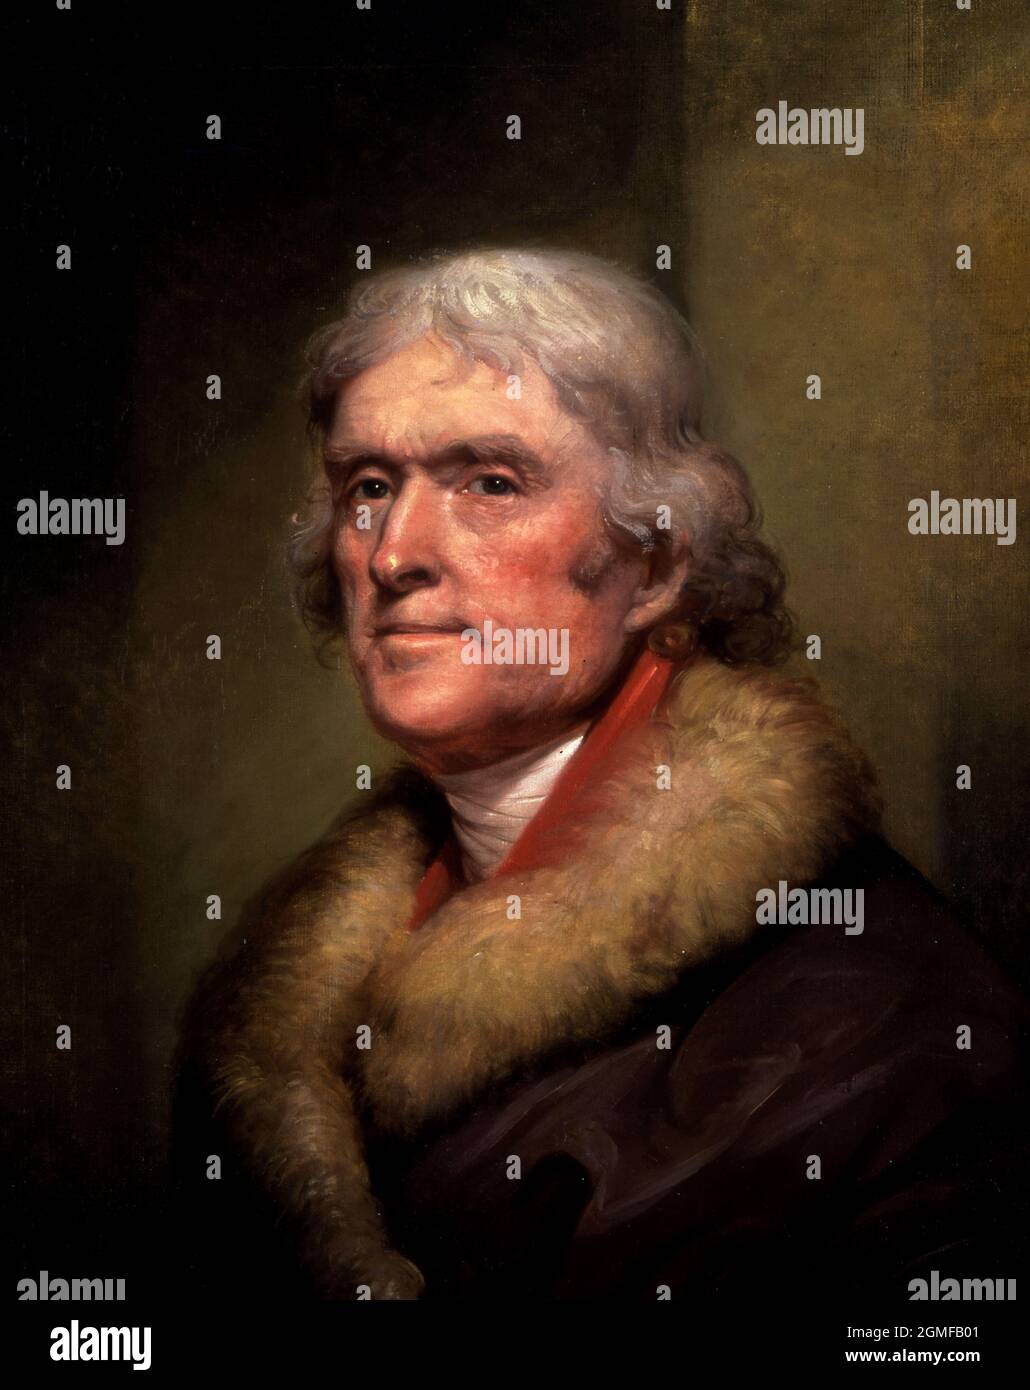 Thomas Jefferson. Ritratto del 3° Presidente degli Stati Uniti, Thomas Jefferson (1743-1826) di Rembrandt Peale (1778-1860), olio su lino, 1805 Foto Stock